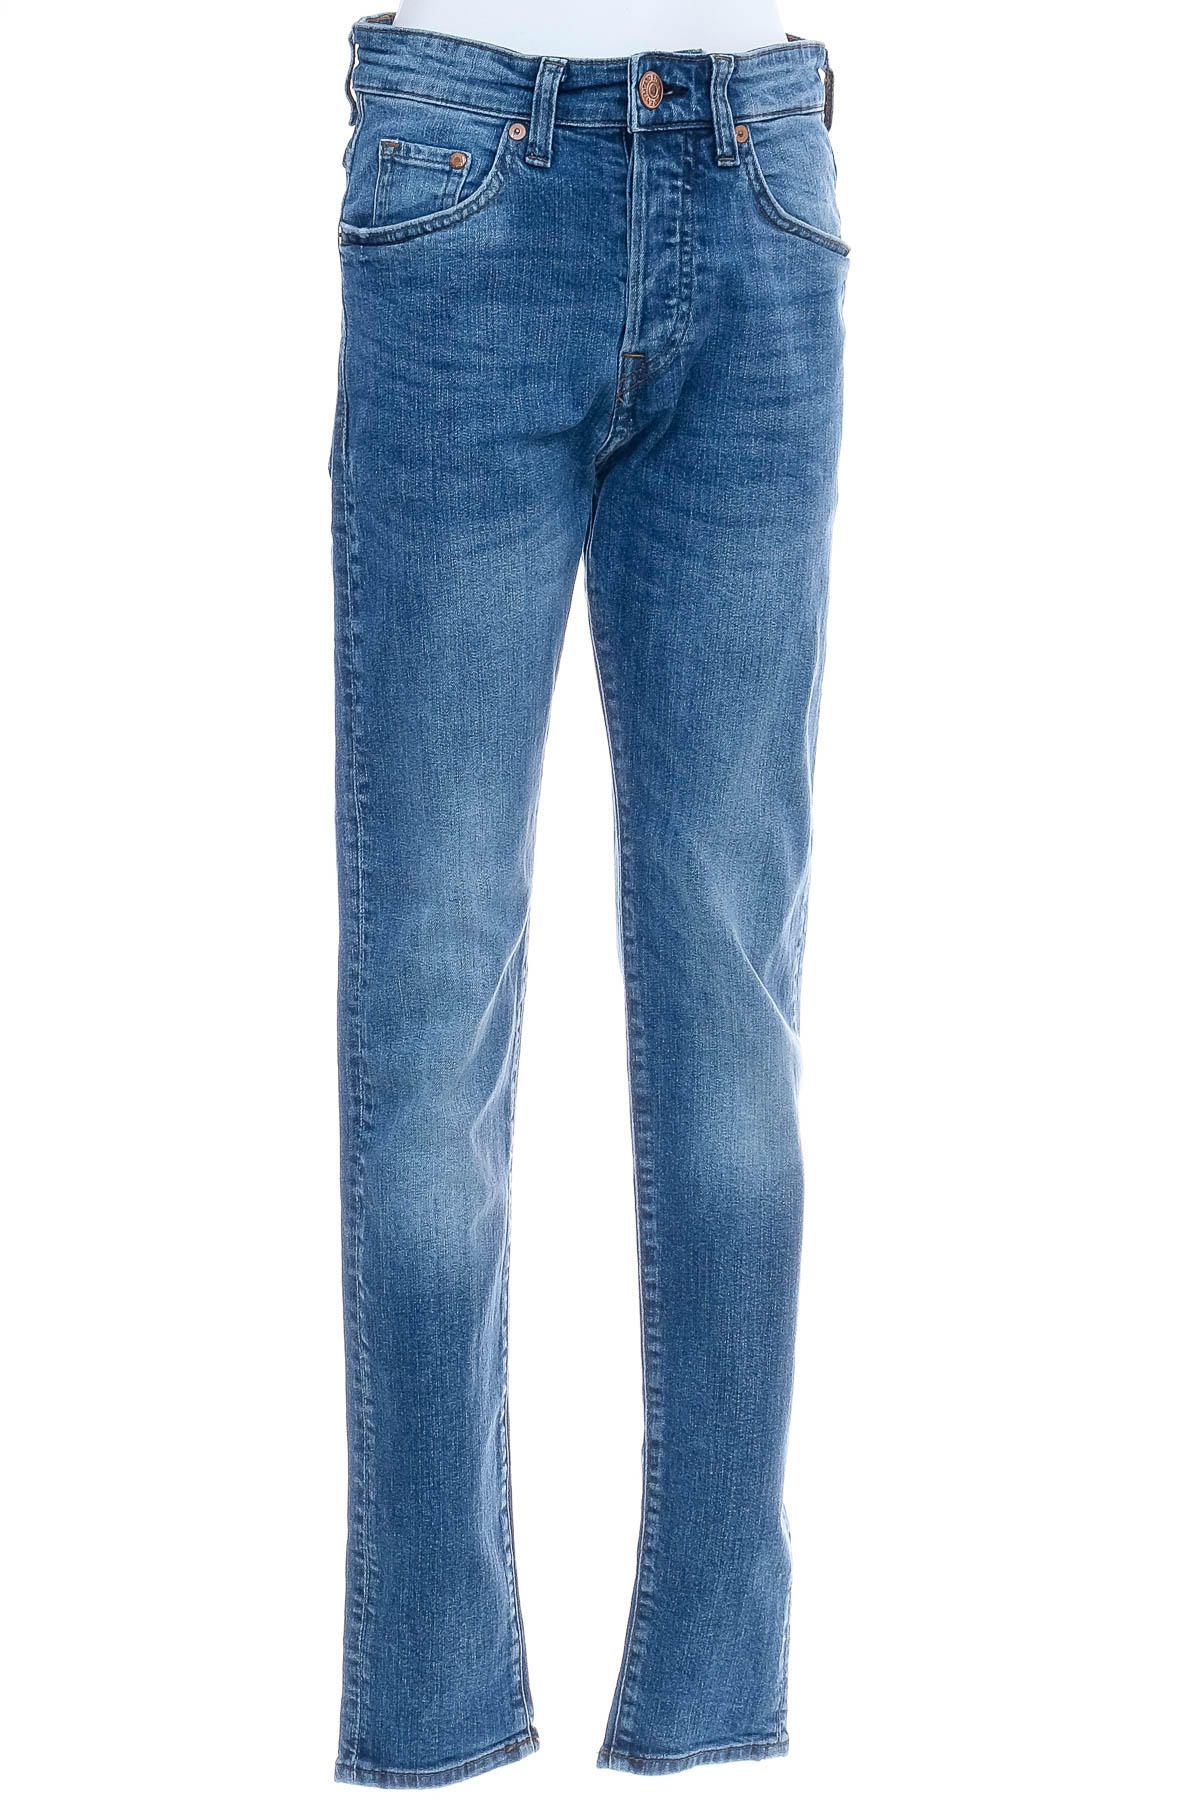 Men's jeans - H&M - 0